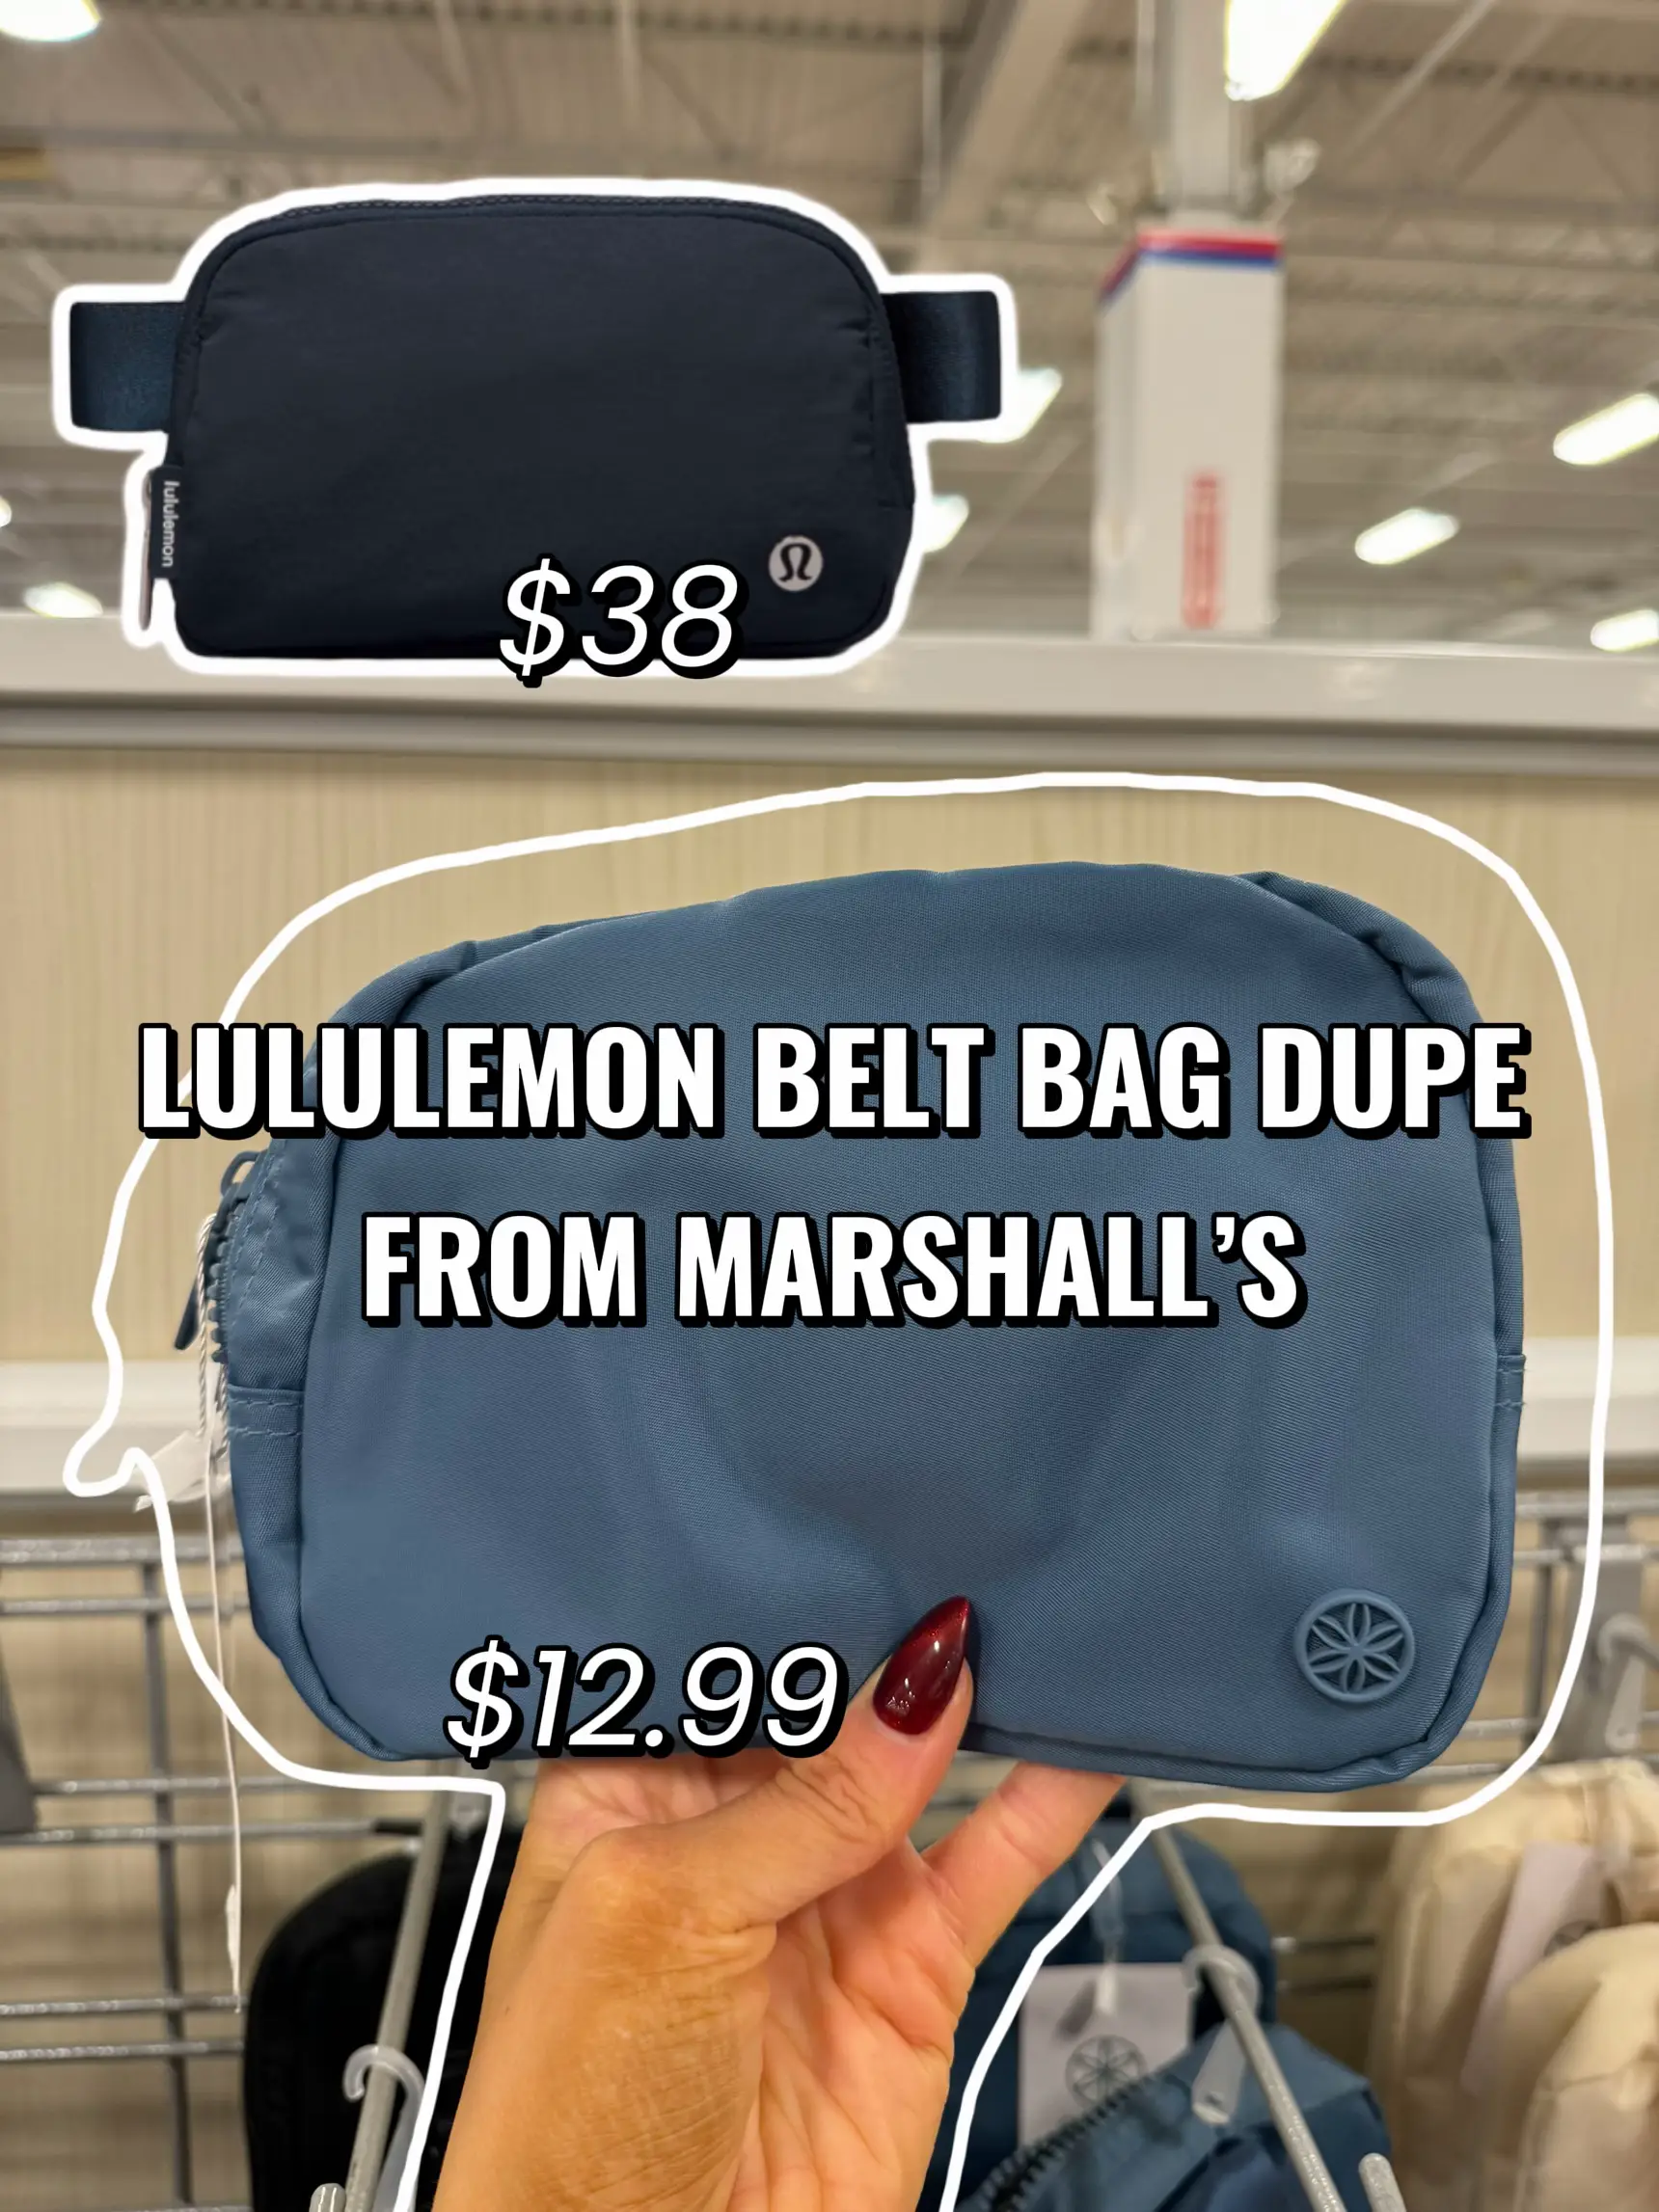 Lululemon Belt Bag Dupe from Marshalls, Gallery posted by Lexirosenstein